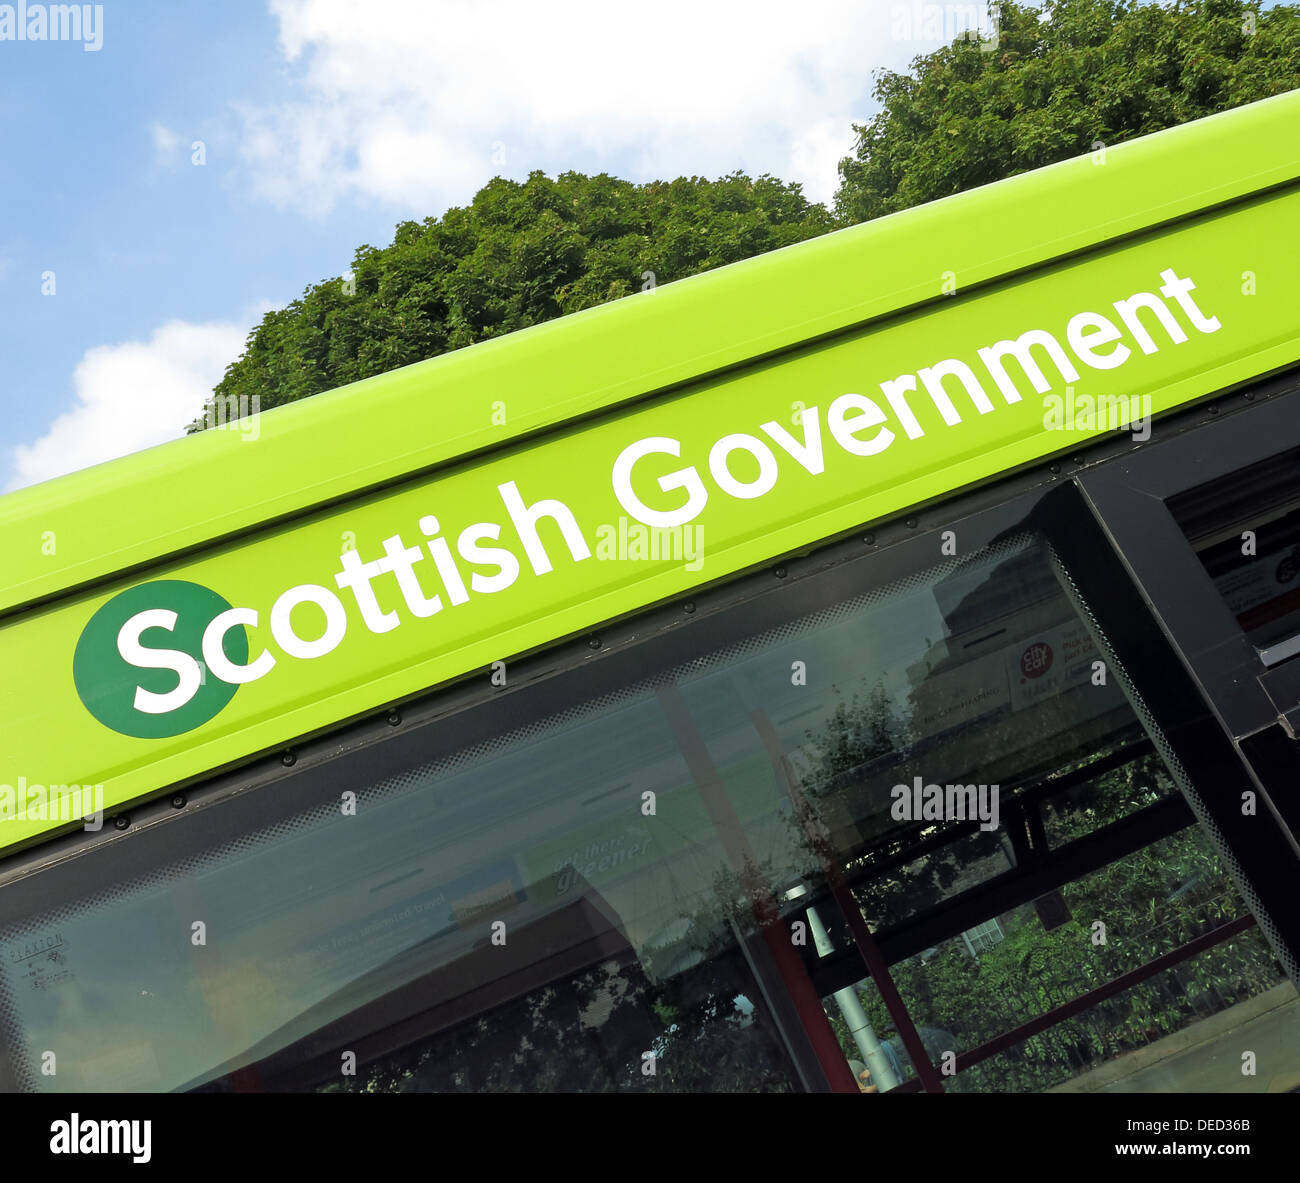 L'extérieur de l'autobus / Le Parlement écossais à Édimbourg du gouvernement qui serait accueil d'une Ecosse indépendante Banque D'Images